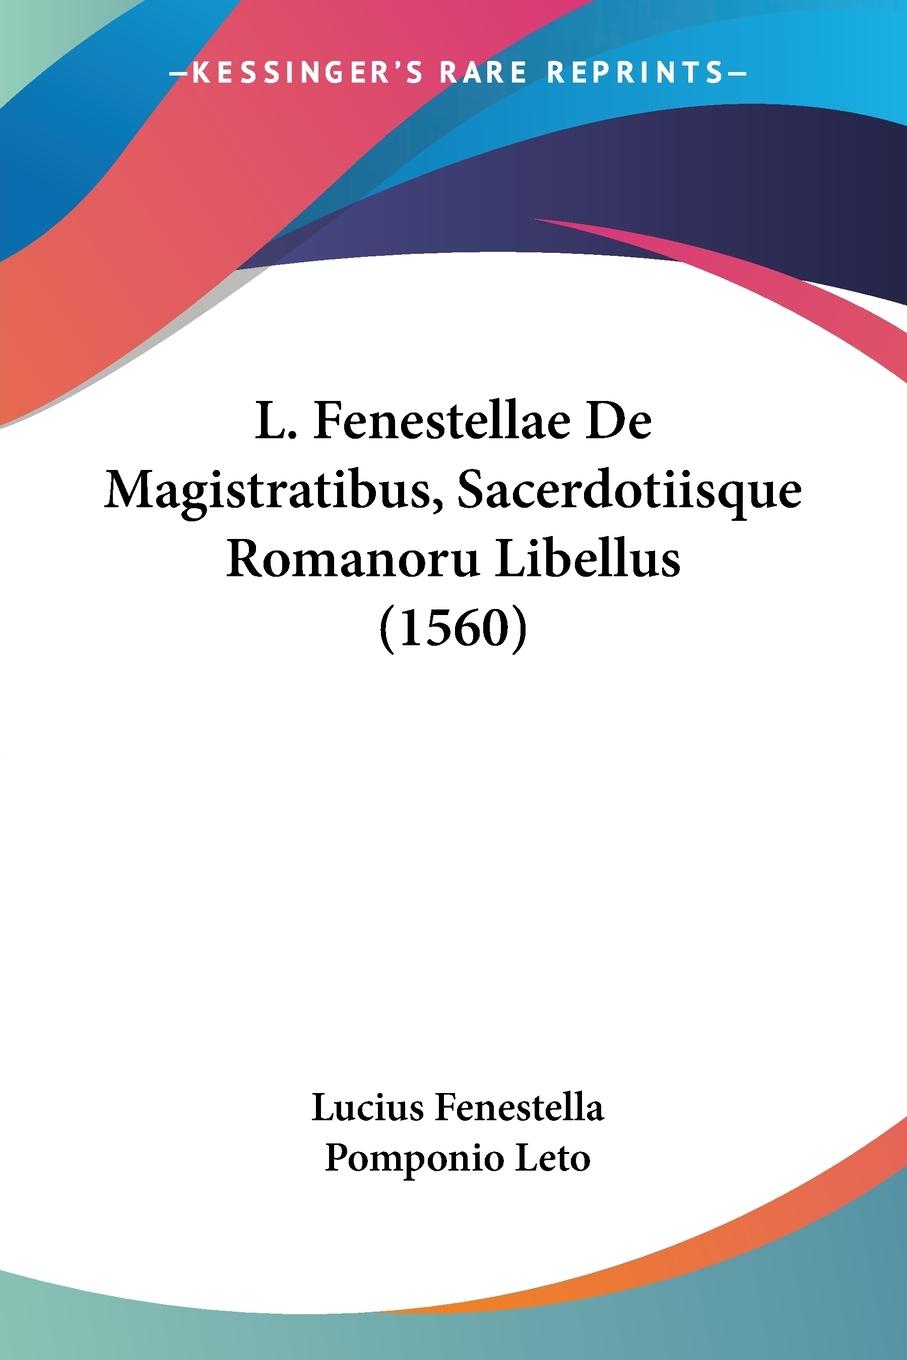 L. Fenestellae De Magistratibus, Sacerdotiisque Romanoru Libellus (1560) - Fenestella, Lucius Leto, Pomponio